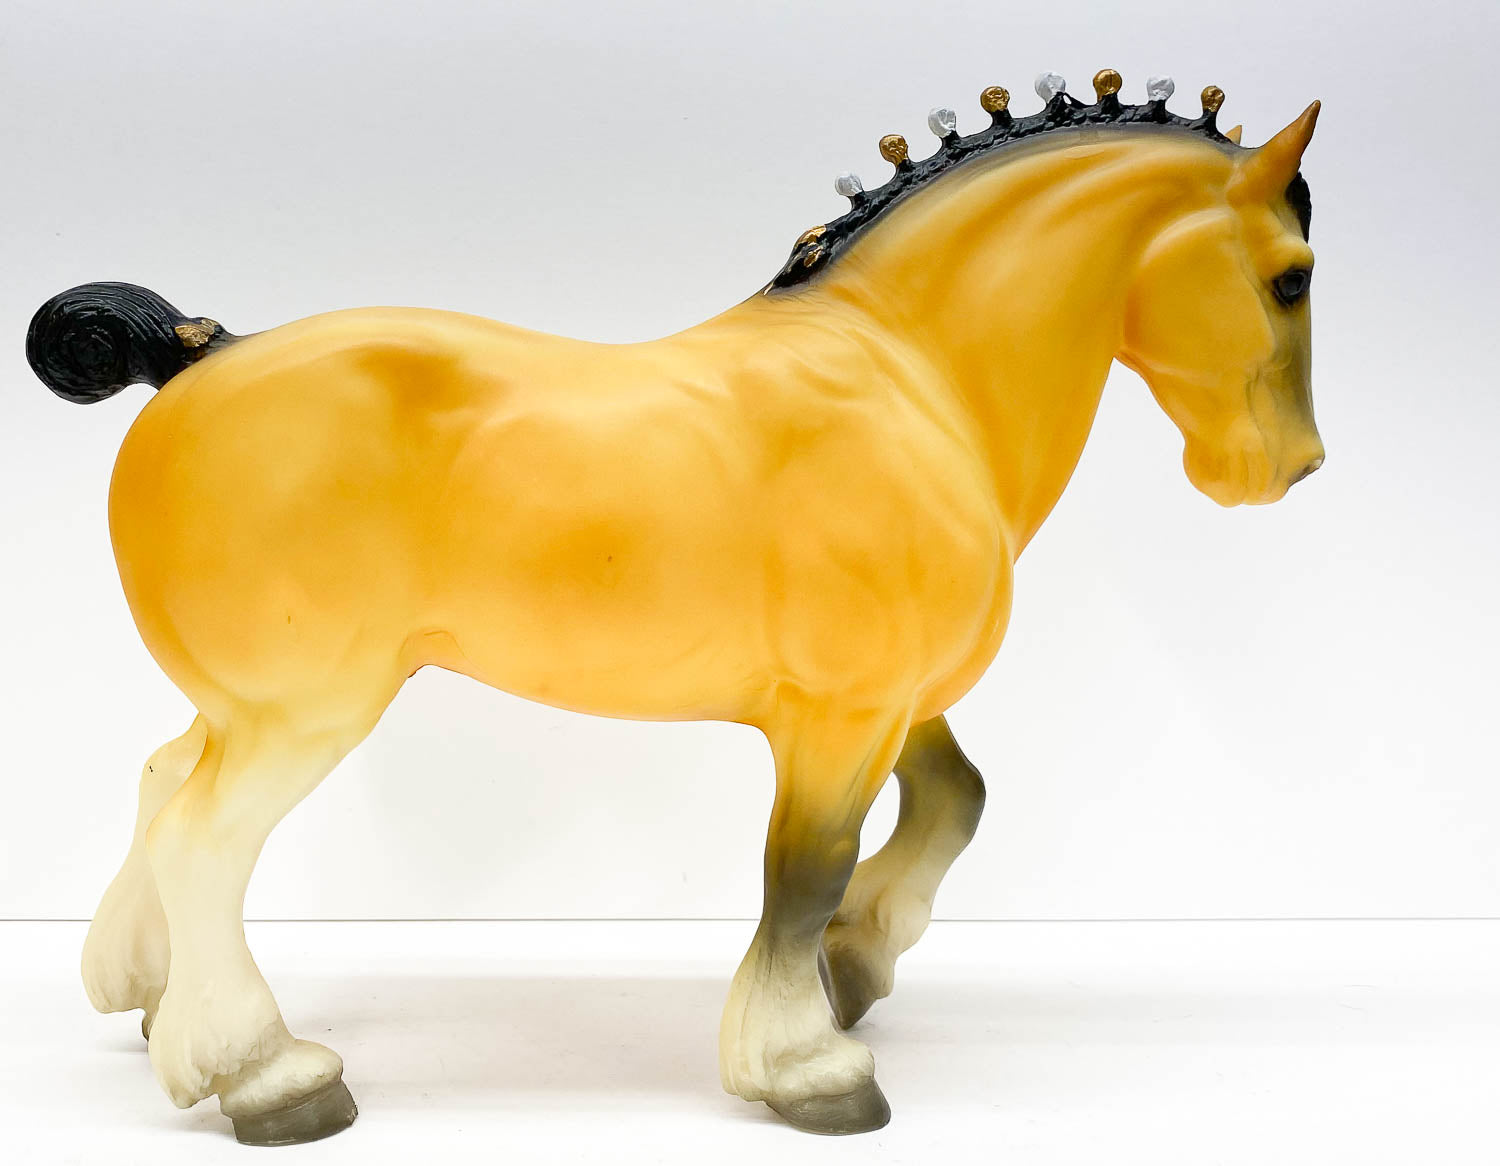 Clydesdale Stallion, Golden Bay (Buckskin) - SHRINKY